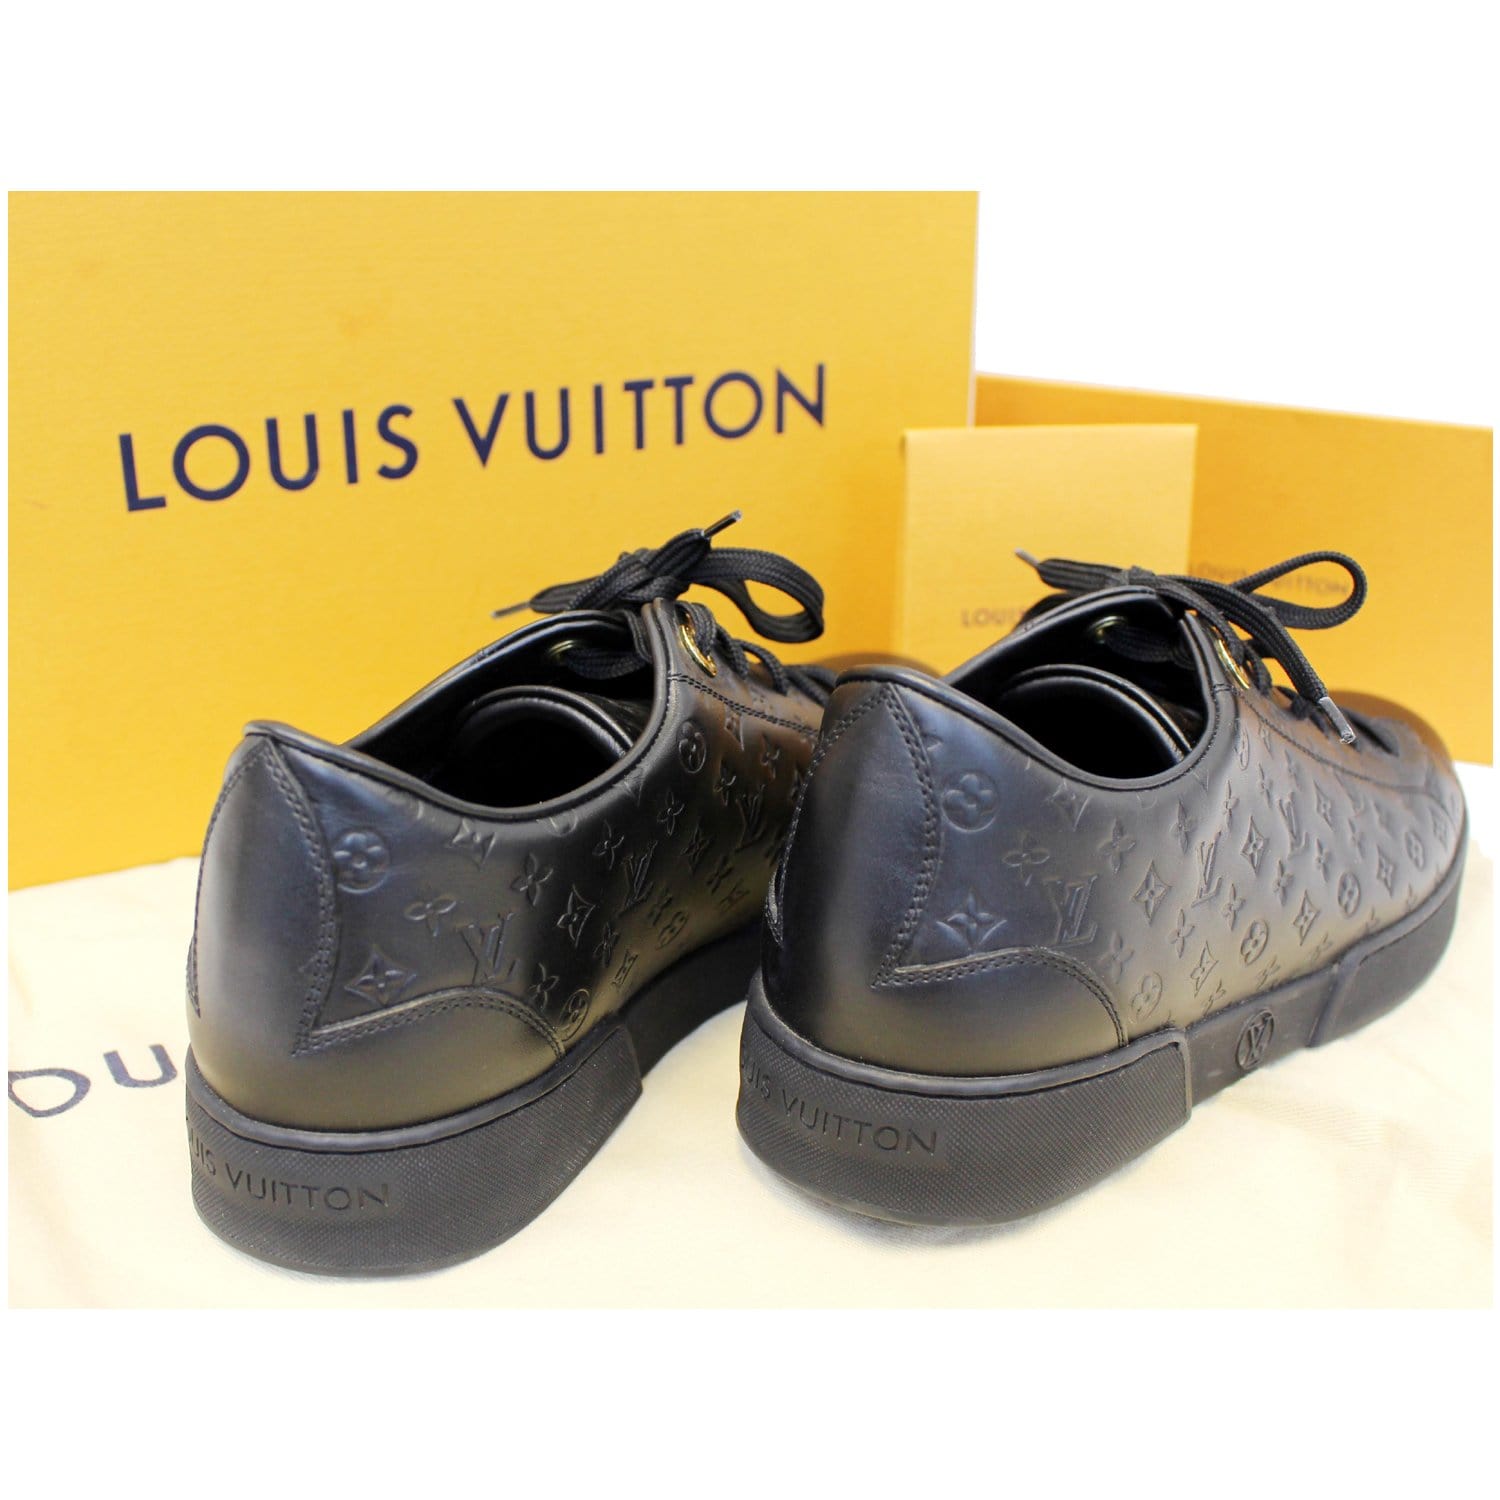 Louis Vuitton: Hành trình từ cậu bé tay trắng trở thành nhà mốt Pháp lừng  danh, biểu tượng của xa xỉ và địa vị